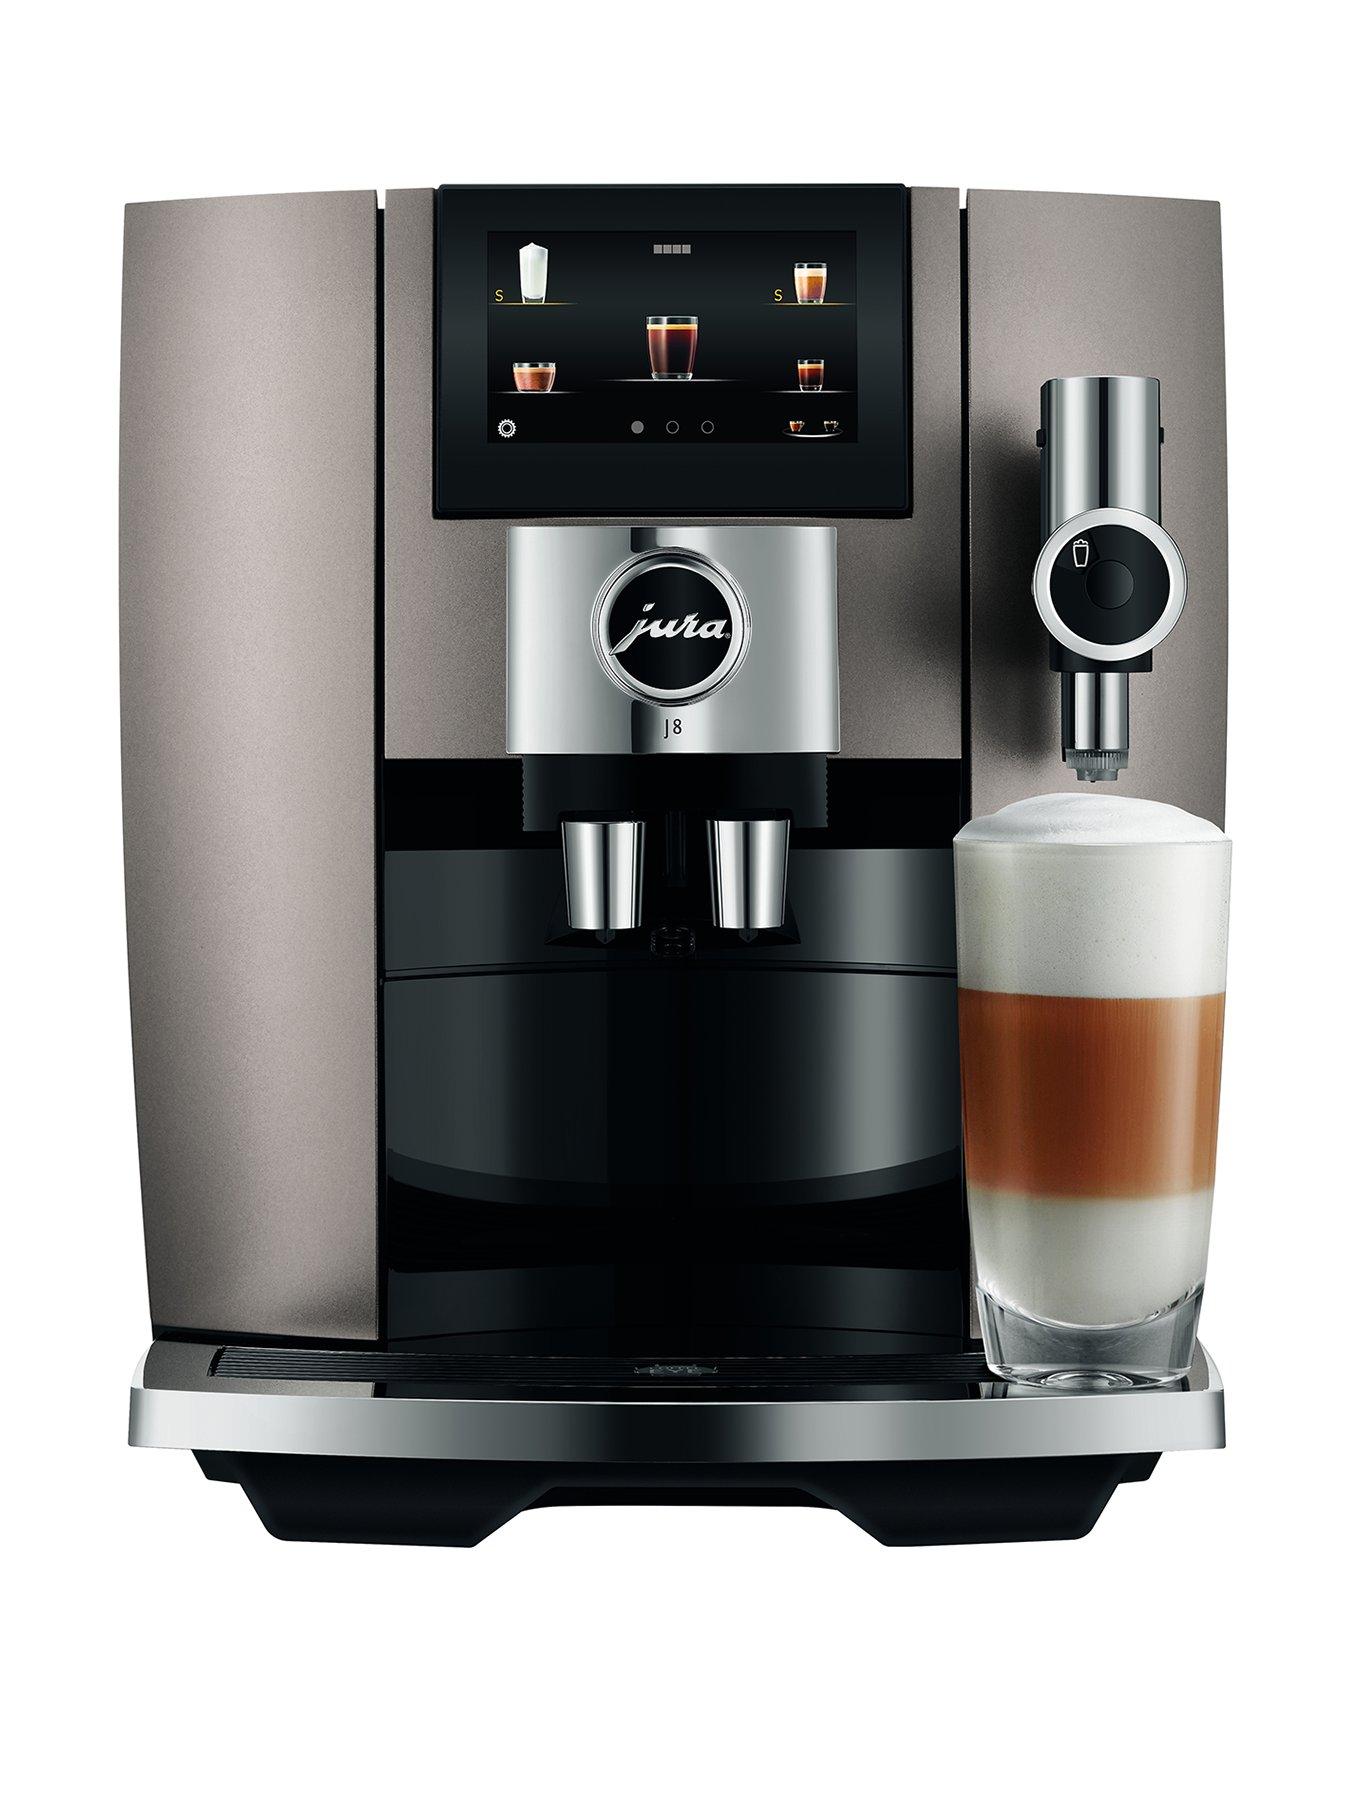 Impressive Lever-Press Espresso Machine Has Finesse